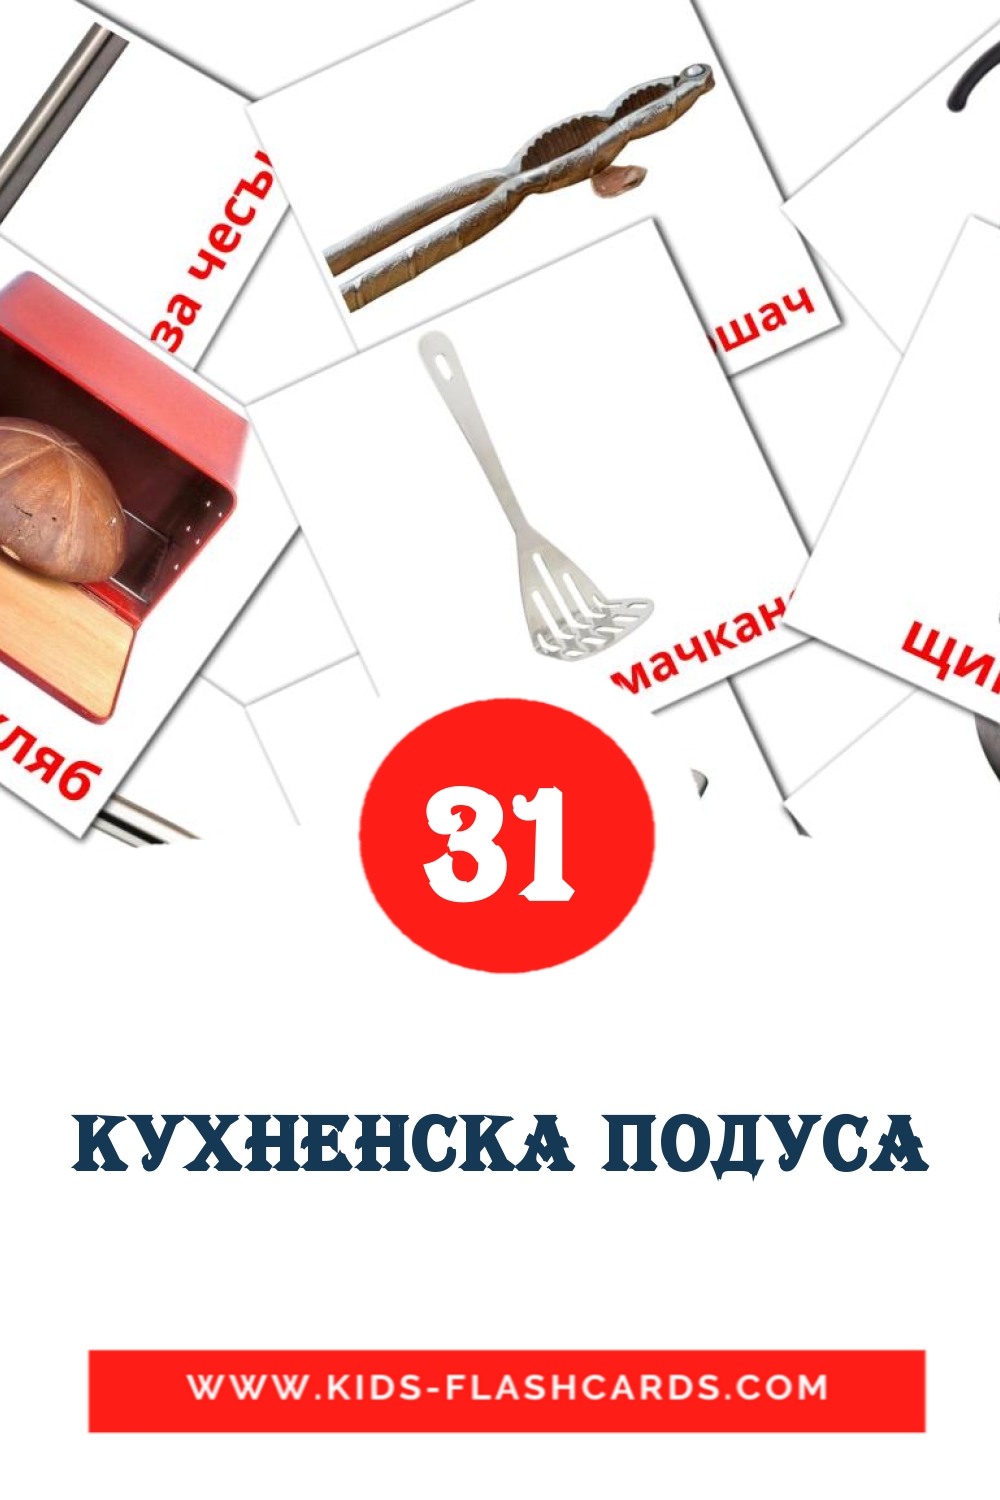 31 Кухненска подуса Bildkarten für den Kindergarten auf Bulgarisch